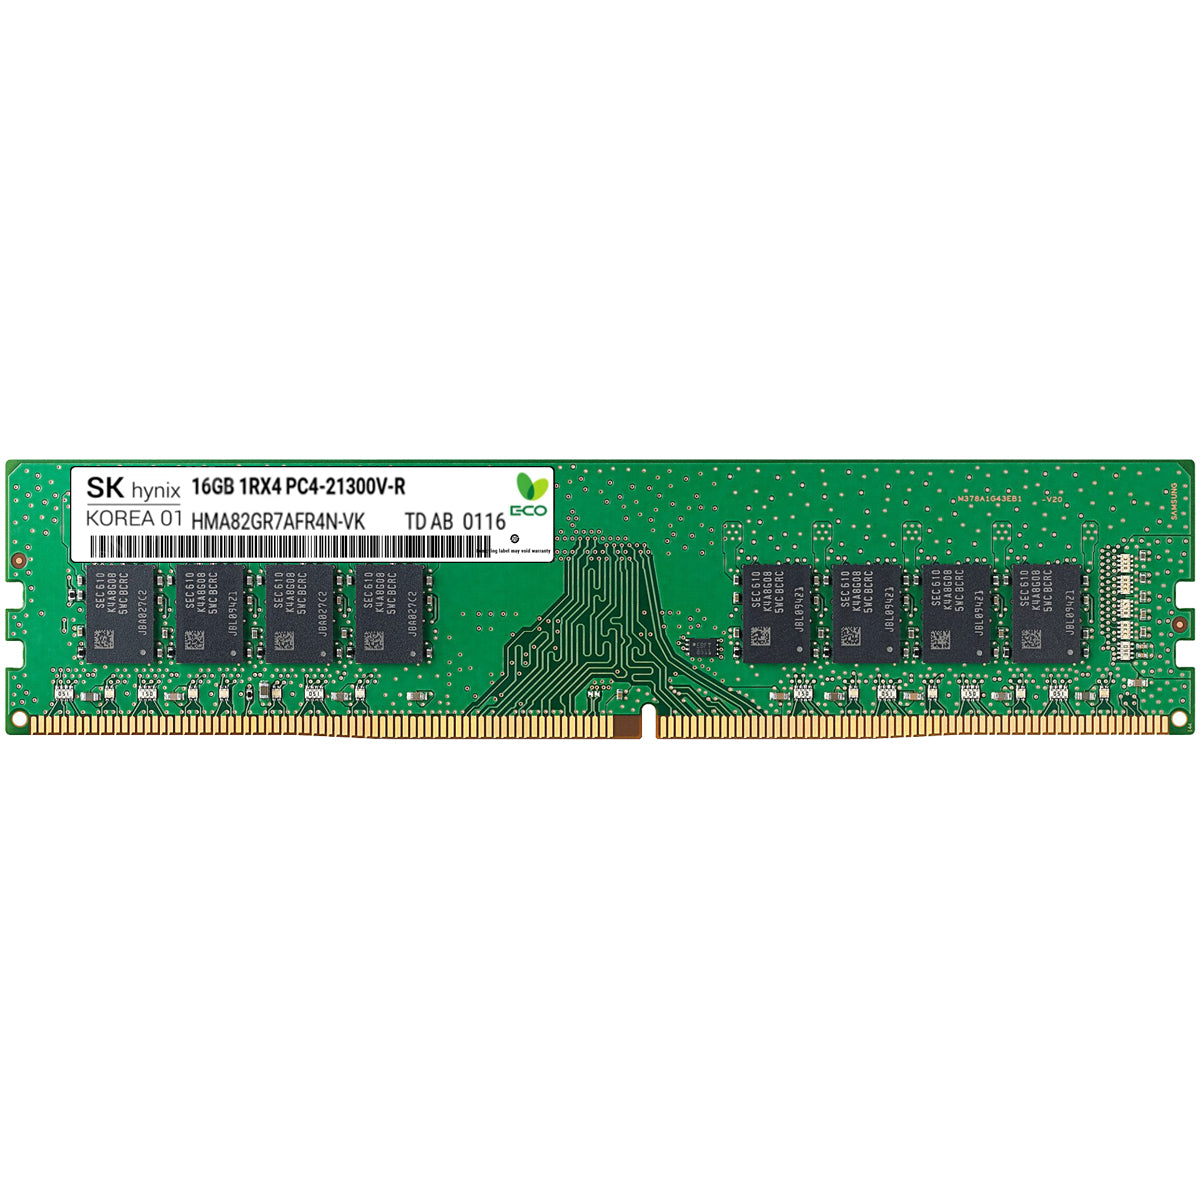 SK Hynix 1x 16GB DDR4-2666 RDIMM PC4-21300V-R Single Rank x4